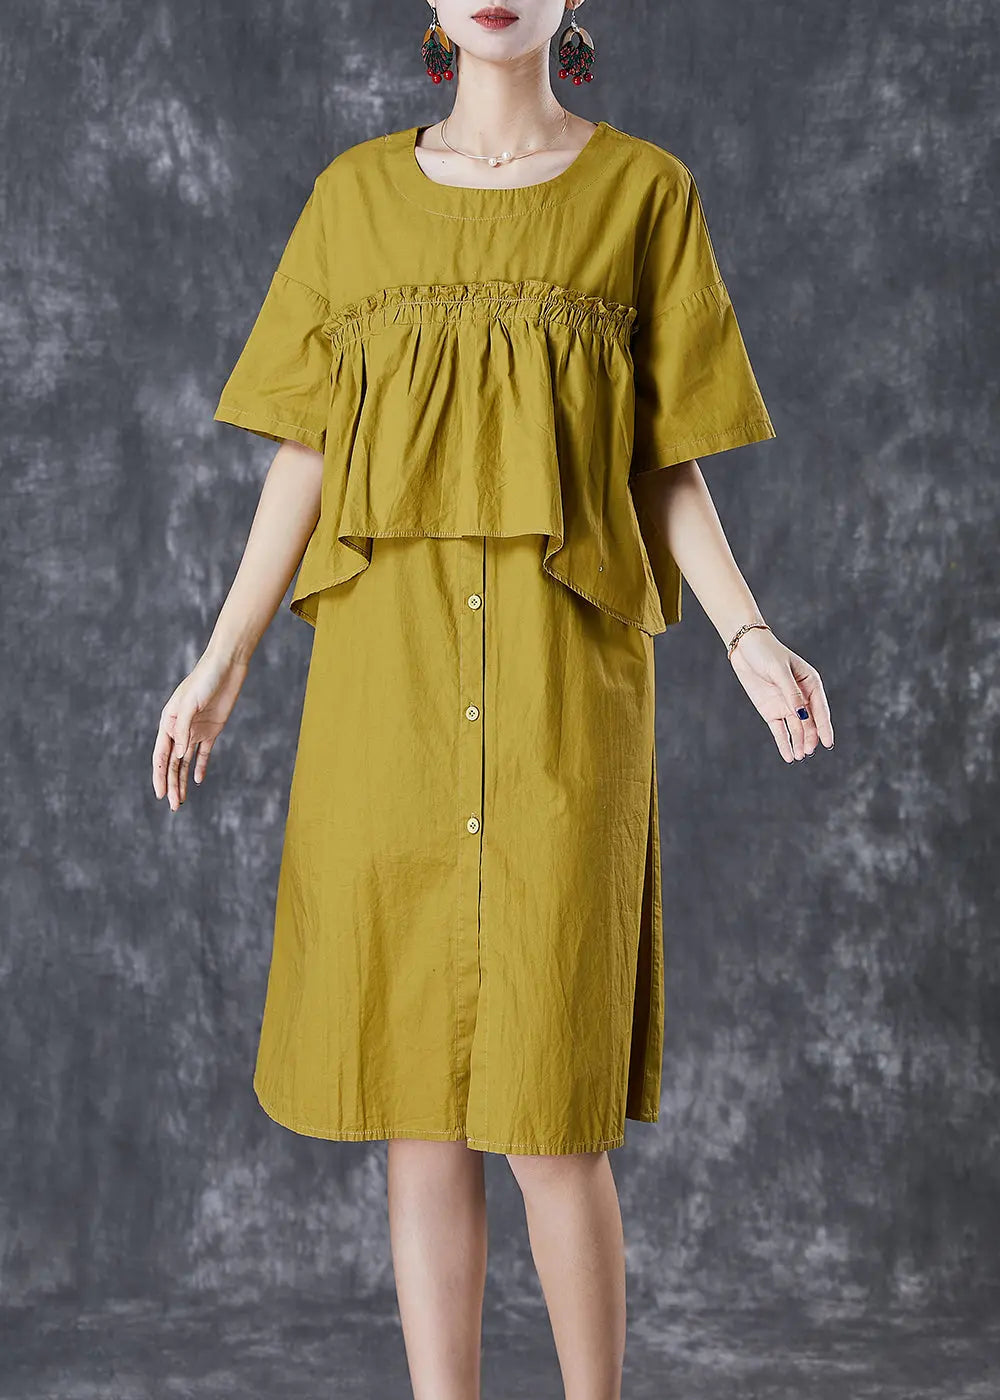 Boho Green Ruffled Patchwork Cotton Fake Two Piece Dress Fall Ada Fashion